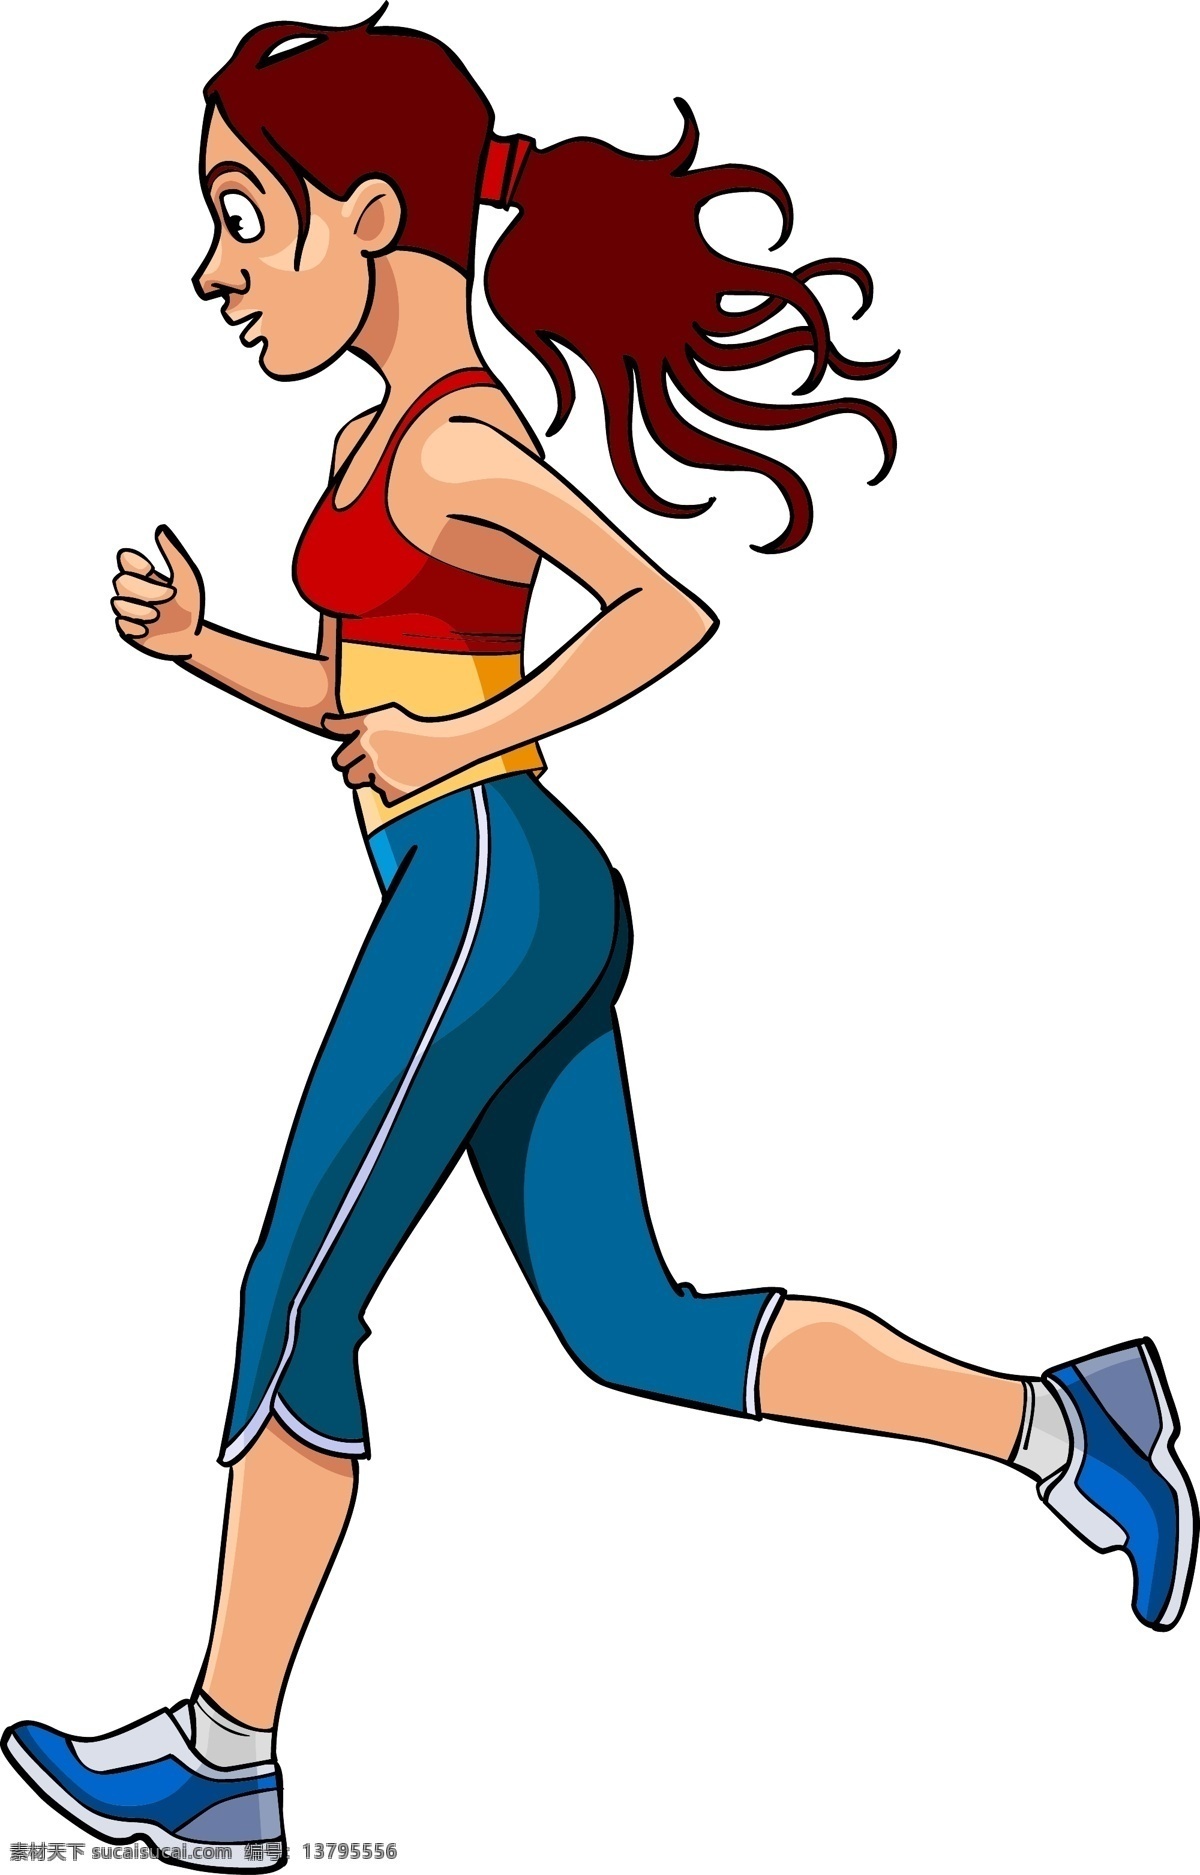 跑步 健身 人物 插画 卡通人物漫画 人物插画 人物插图 运动 日常生活 矢量人物 矢量素材